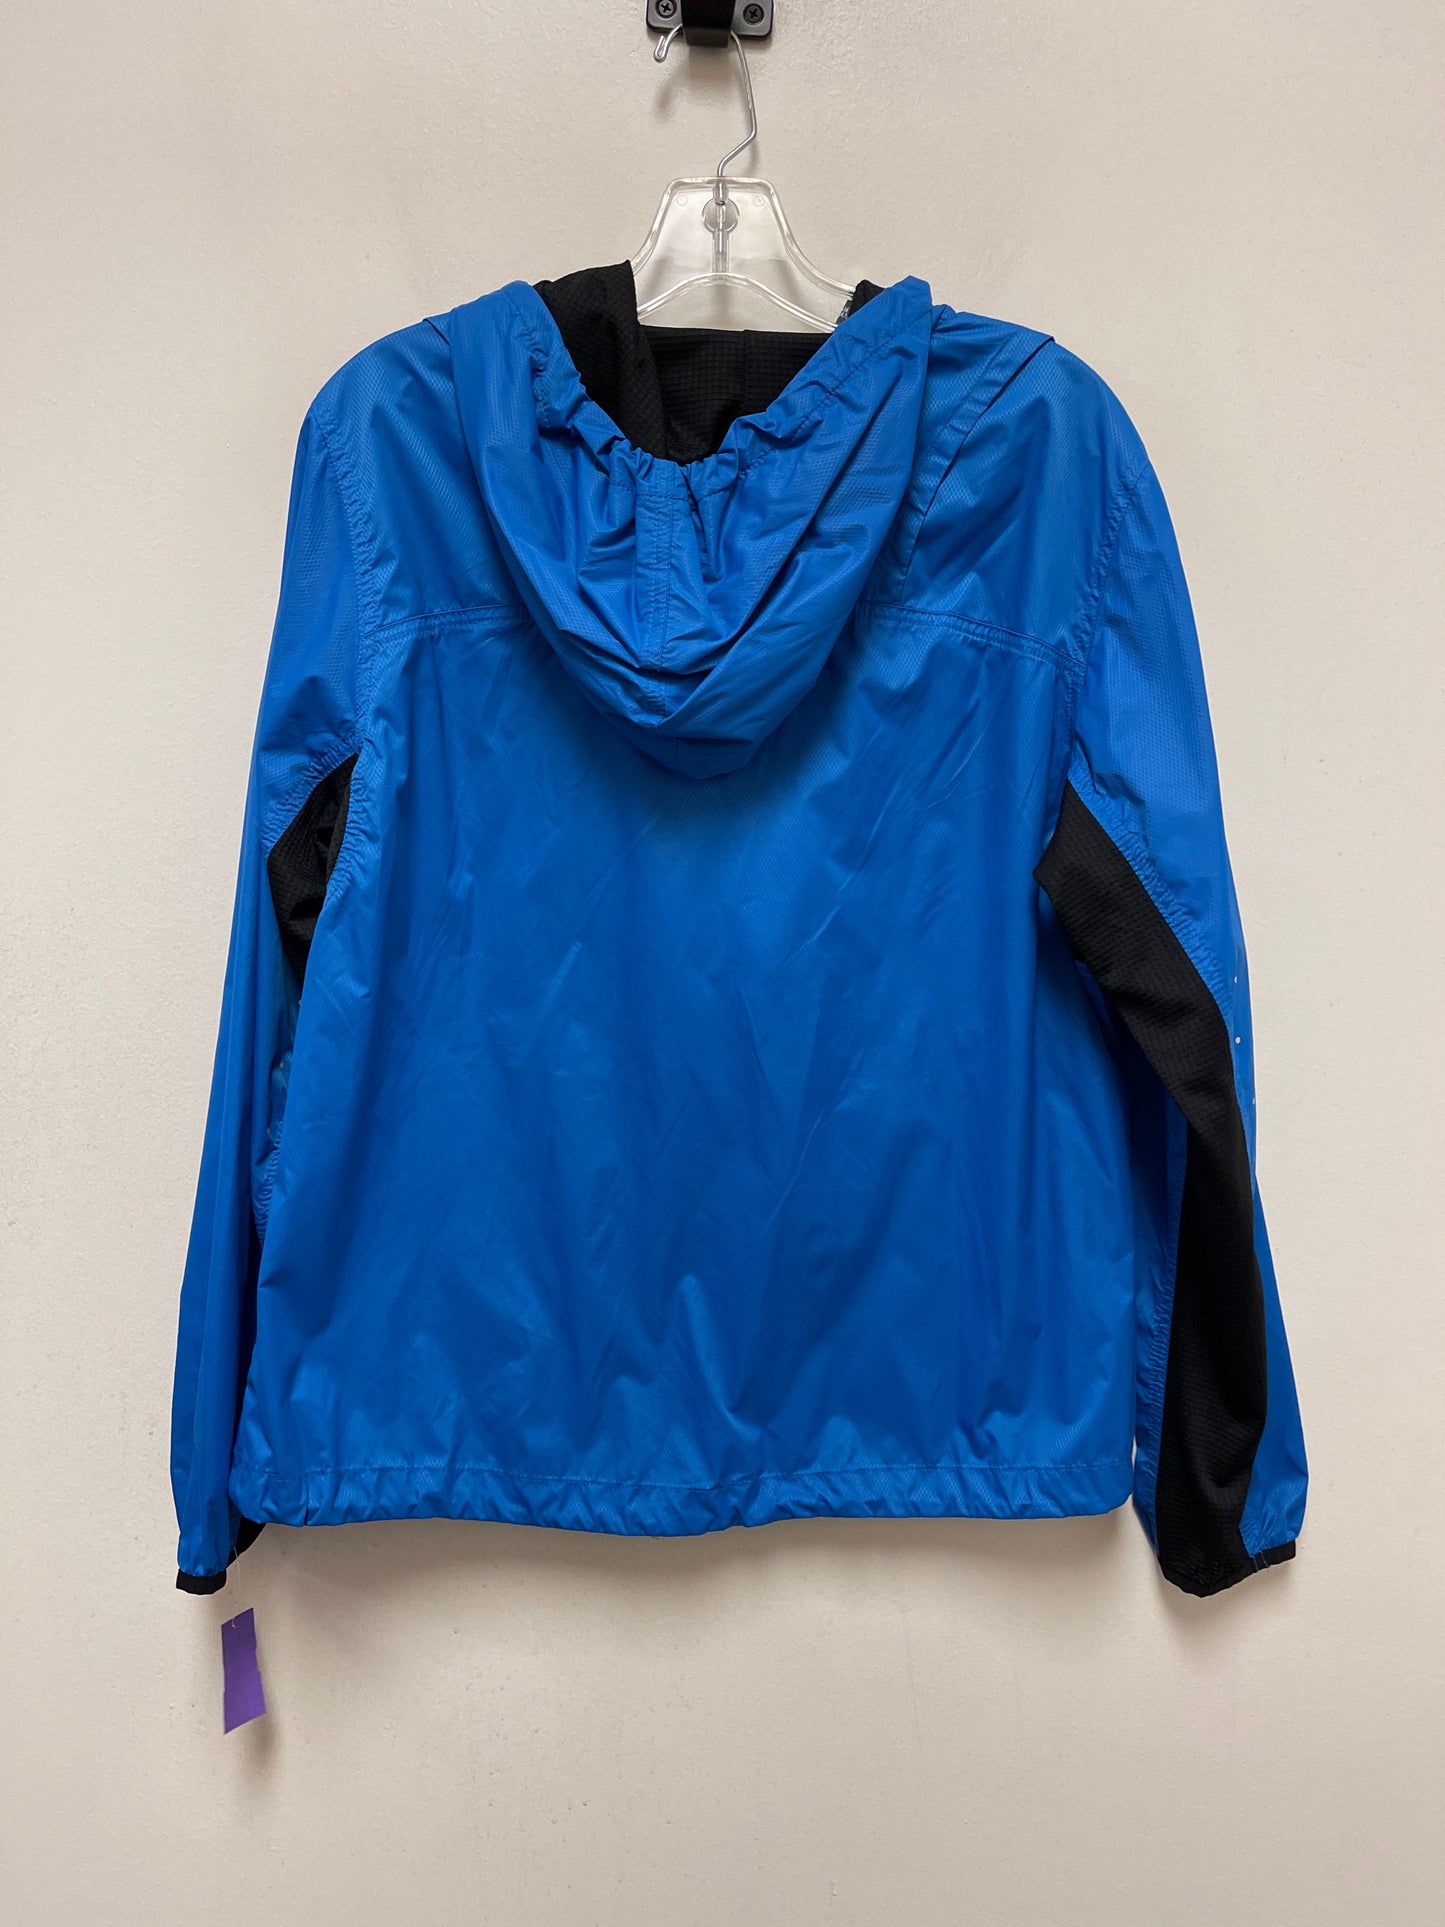 Blue Jacket Windbreaker Fila, Size L